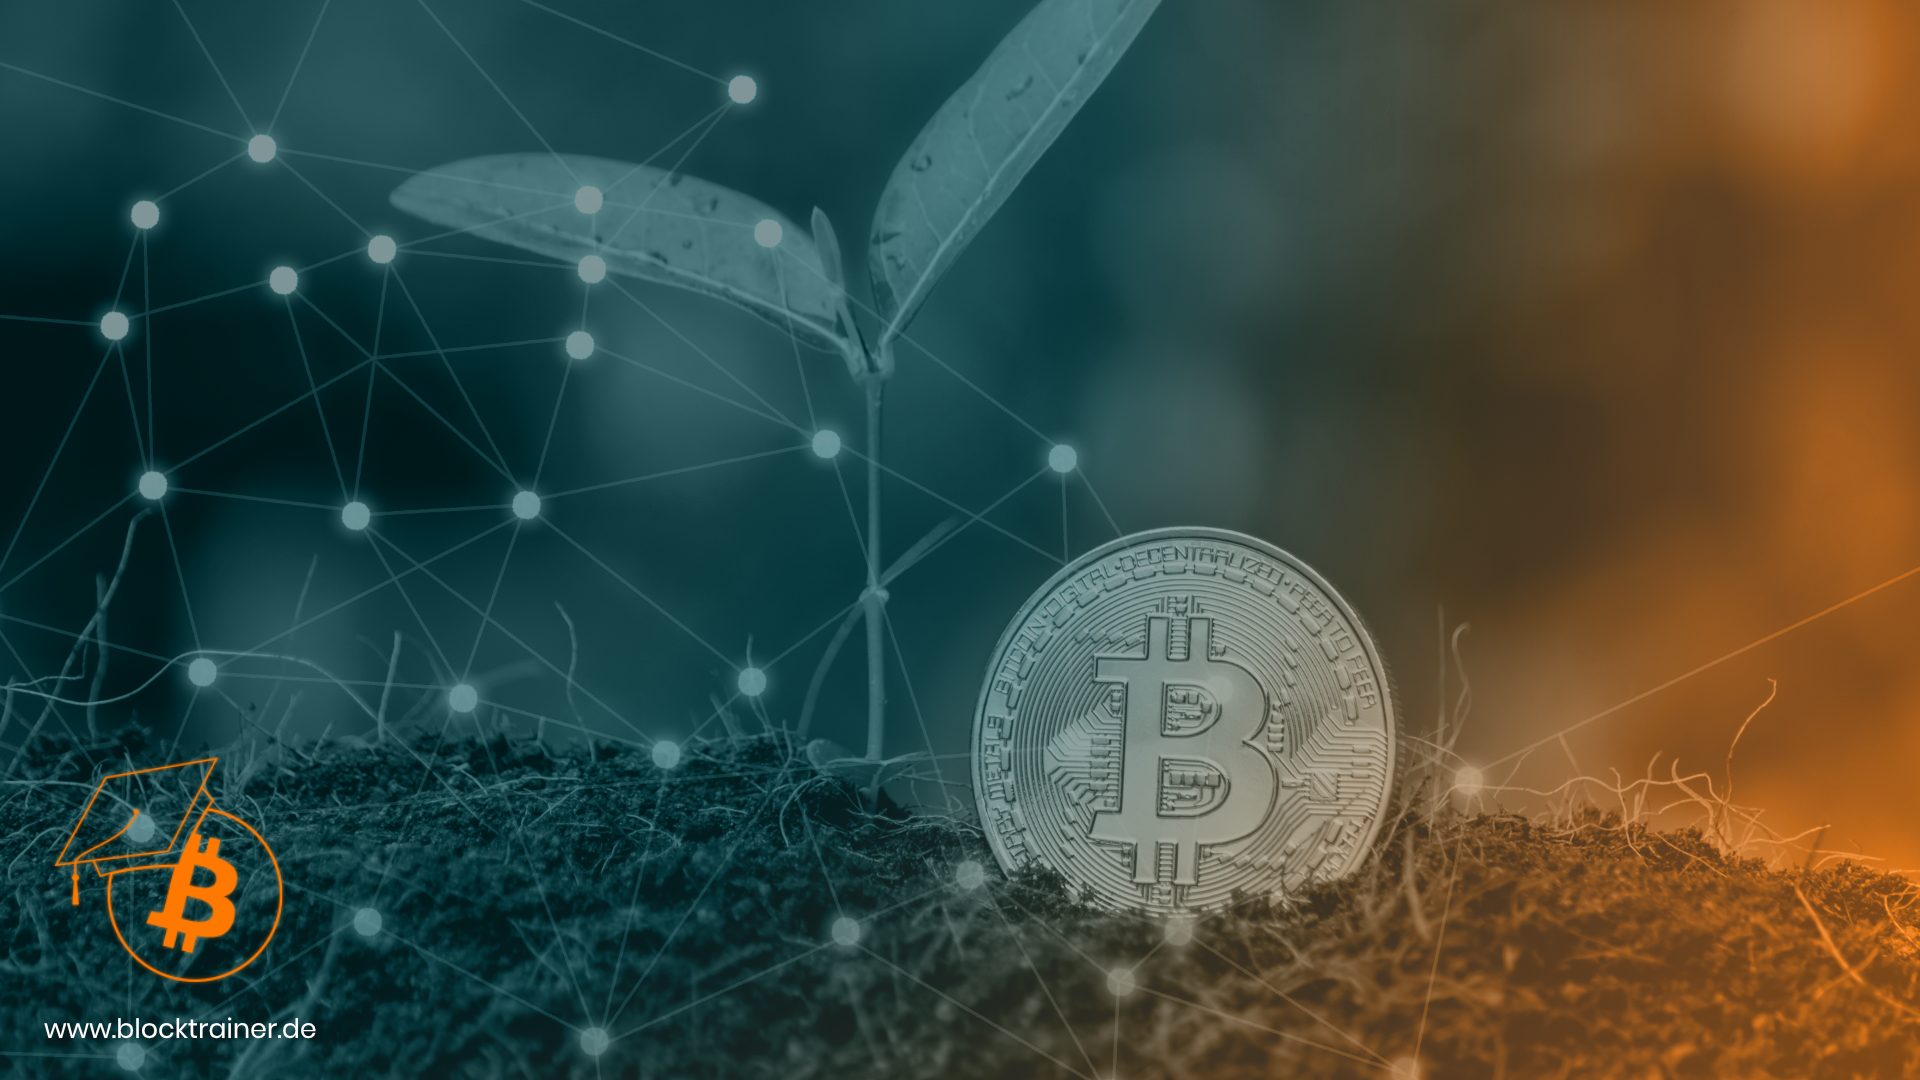 Bitcoinmünze neben Pflanze auf Erdboden